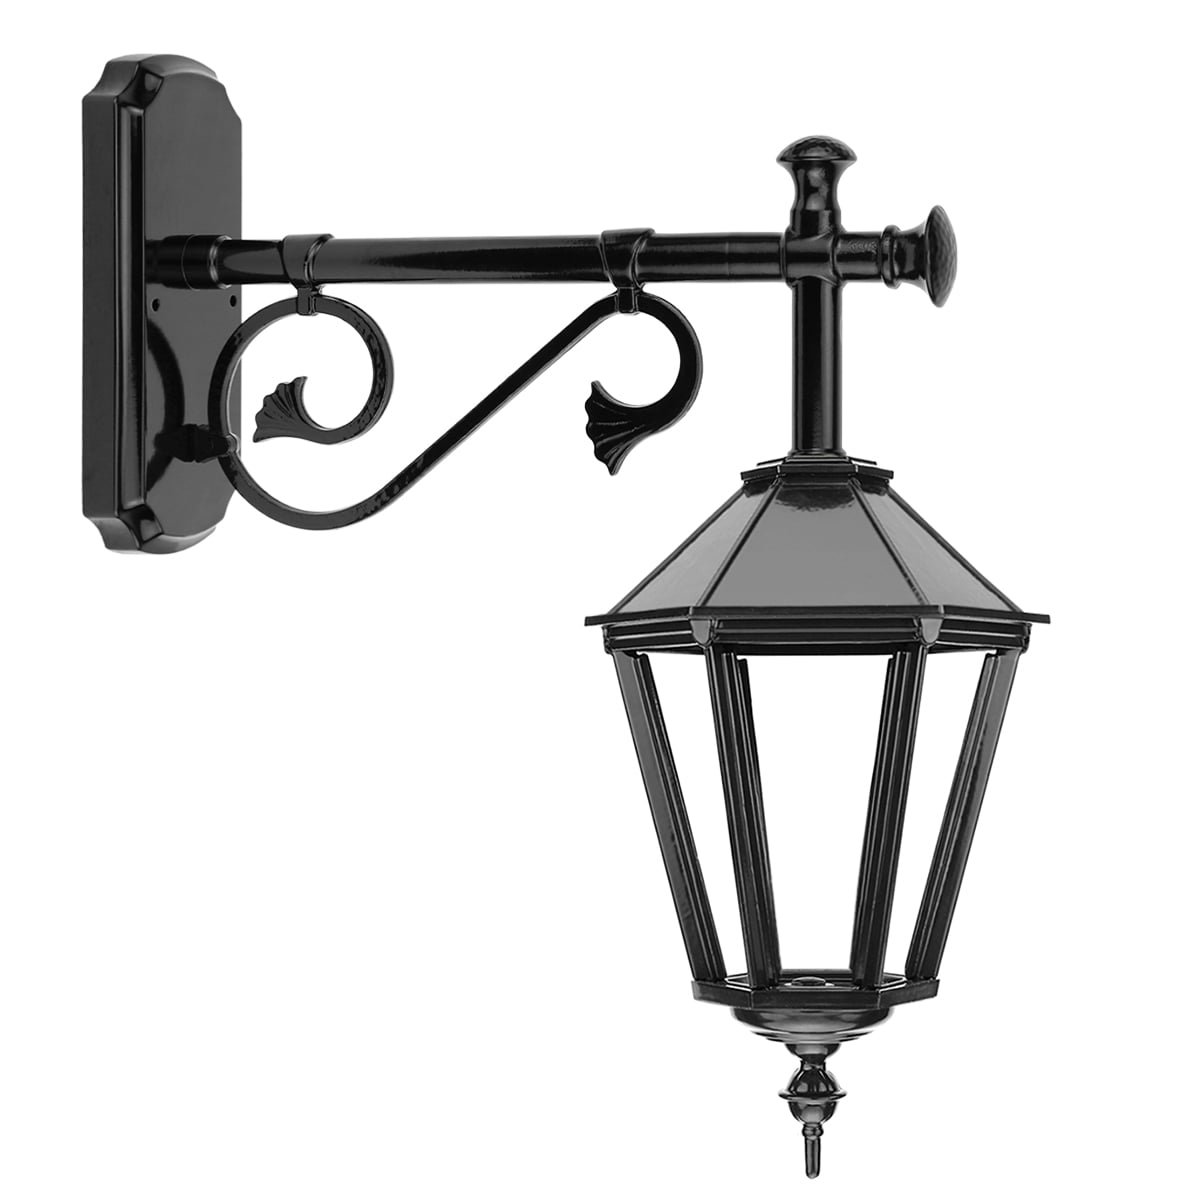 Voordeur lamp hangend Asperen - 60 cm